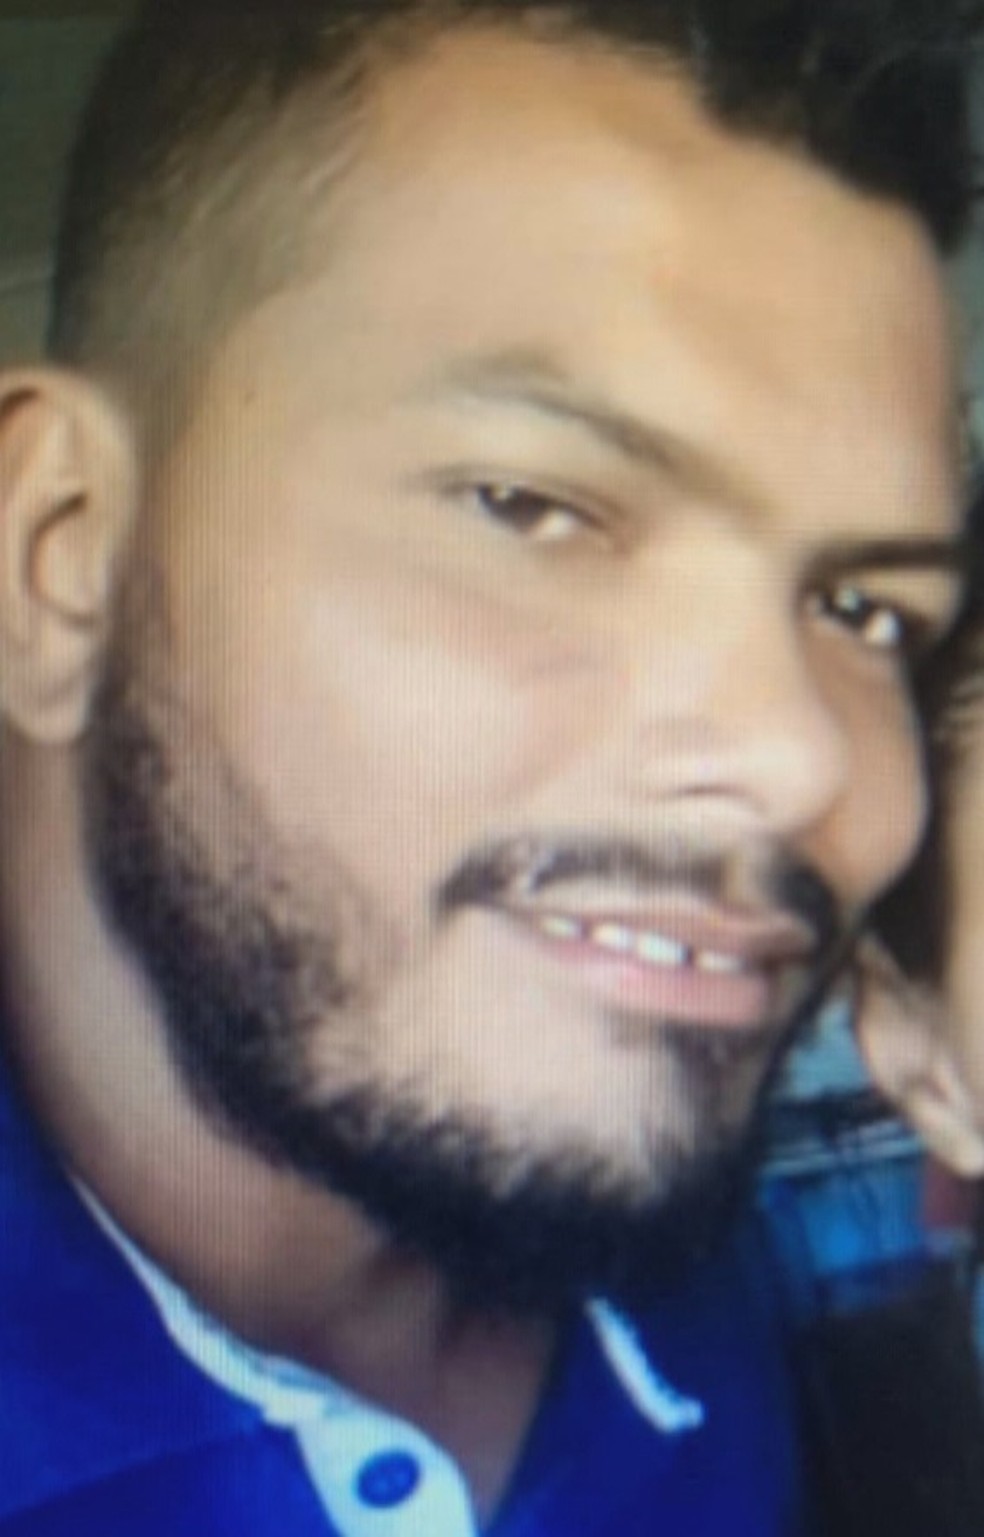 Wellington Lima, de 28 anos, foi morto a facadas, no DF — Foto: Arquivo pessoal